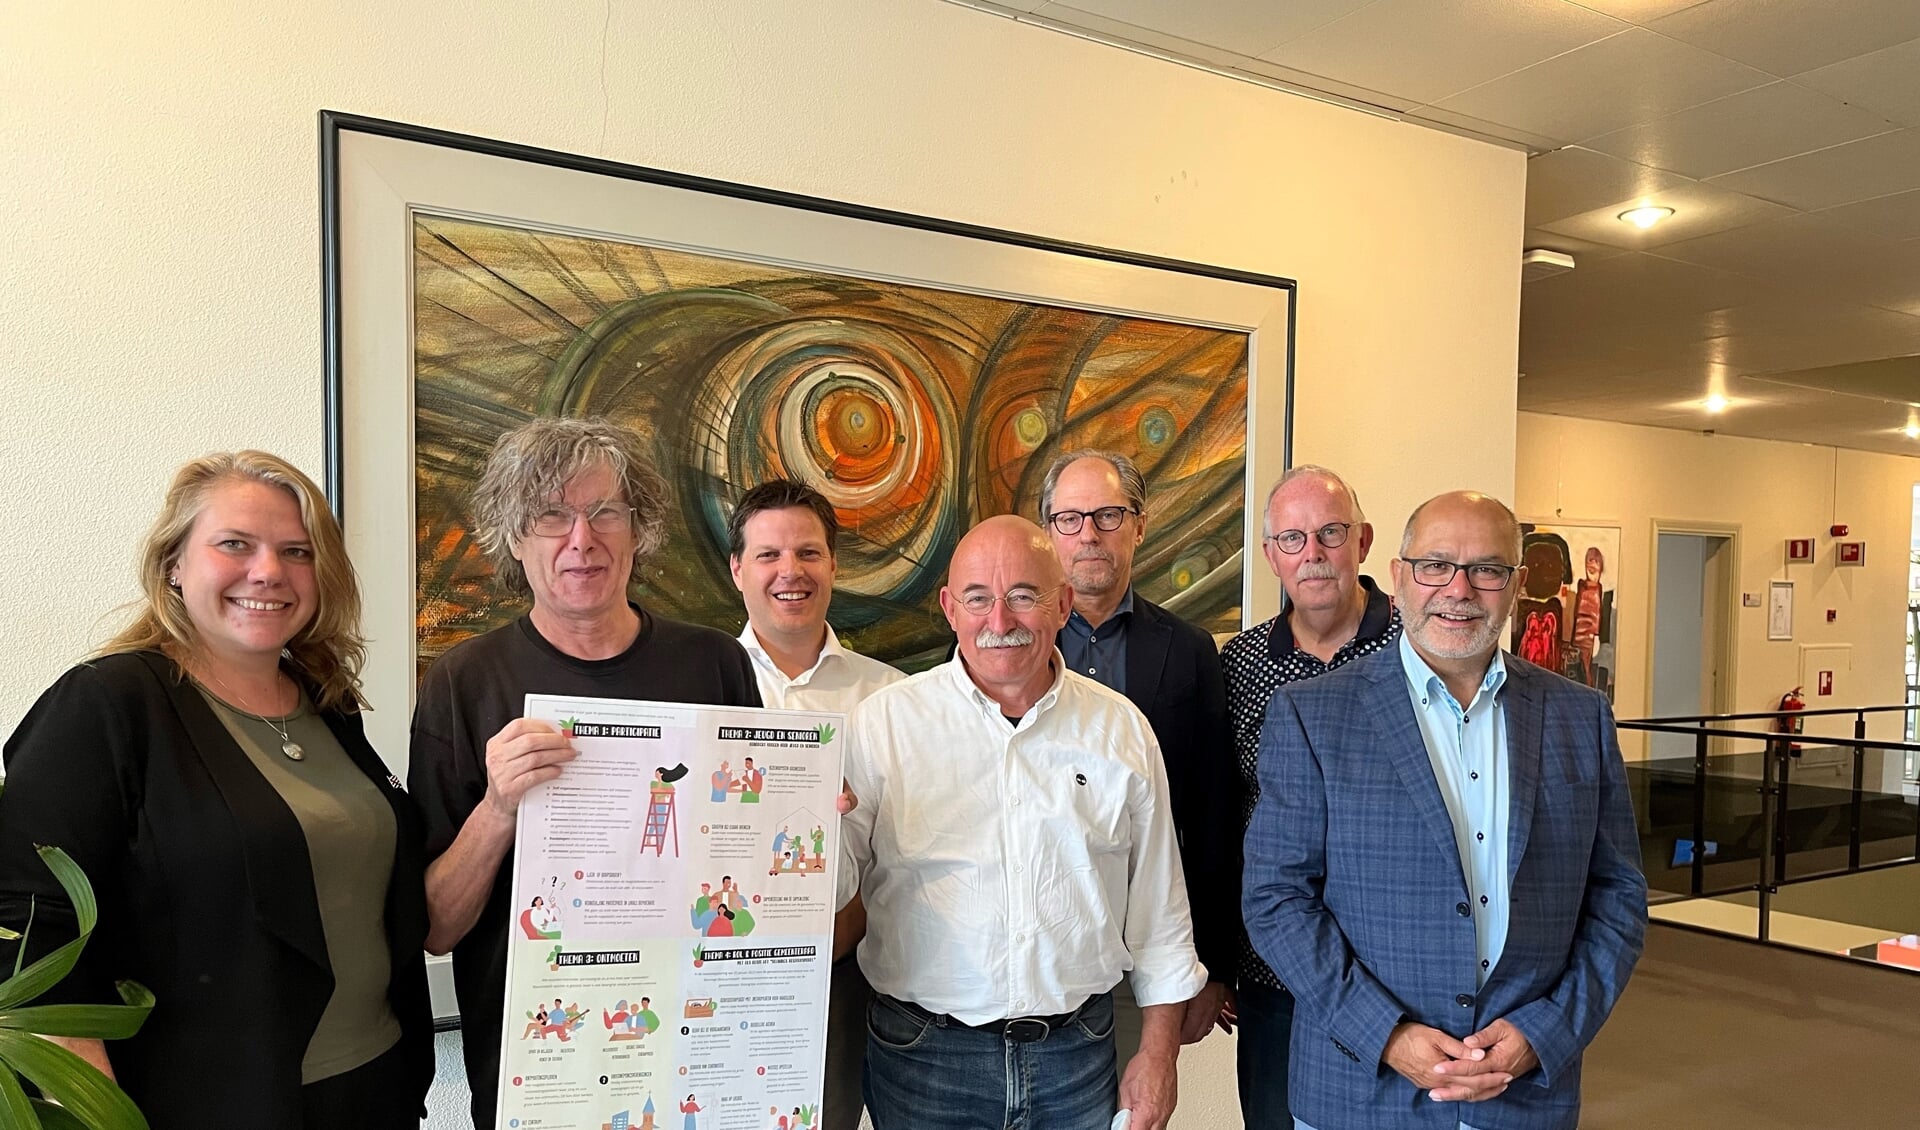 De voorzitters van de gemeenteraadsfracties presenteren het Raadsprogramma 2022-2026.
Van links naar rechts: Geeske Lukker (GL), Jos Swartjes (SP), Peter Lam (D66), Eric van Ewijk (BN&M), Erwin Rengers (VVD), Hans Crezee (PvdA) en Dave Preijers (CDA). 
